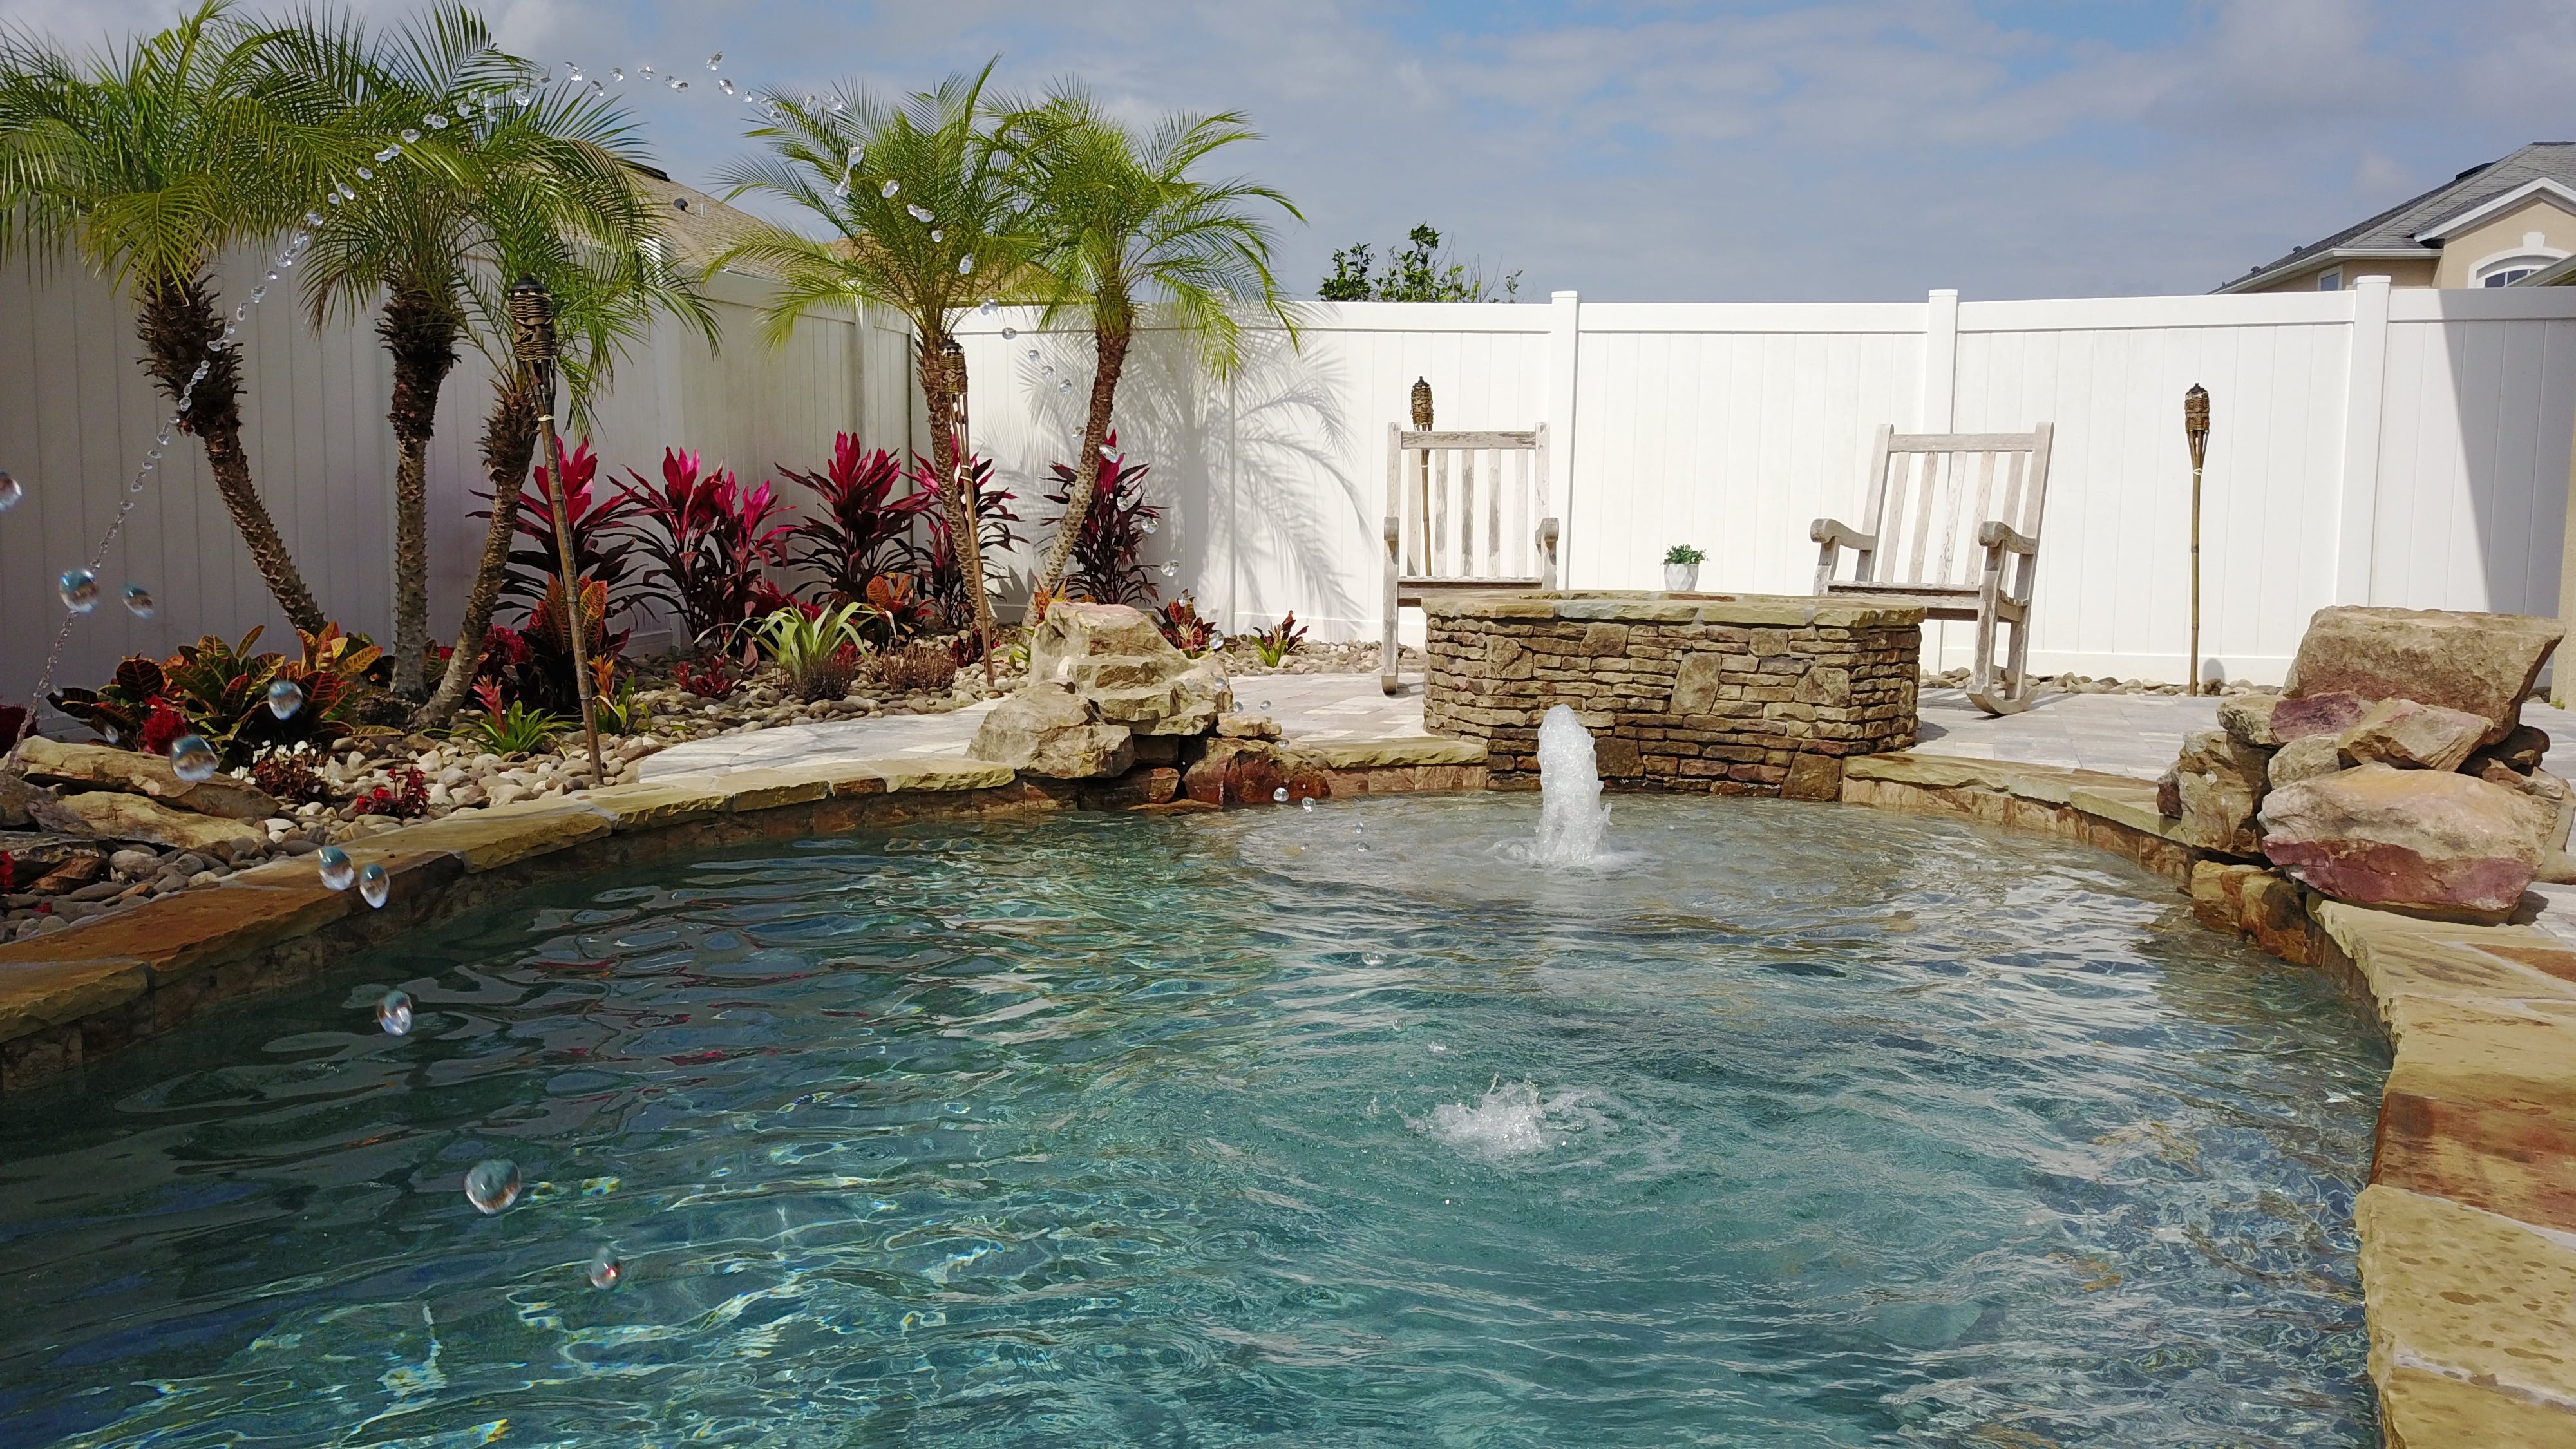 backyard oasis - inground pool